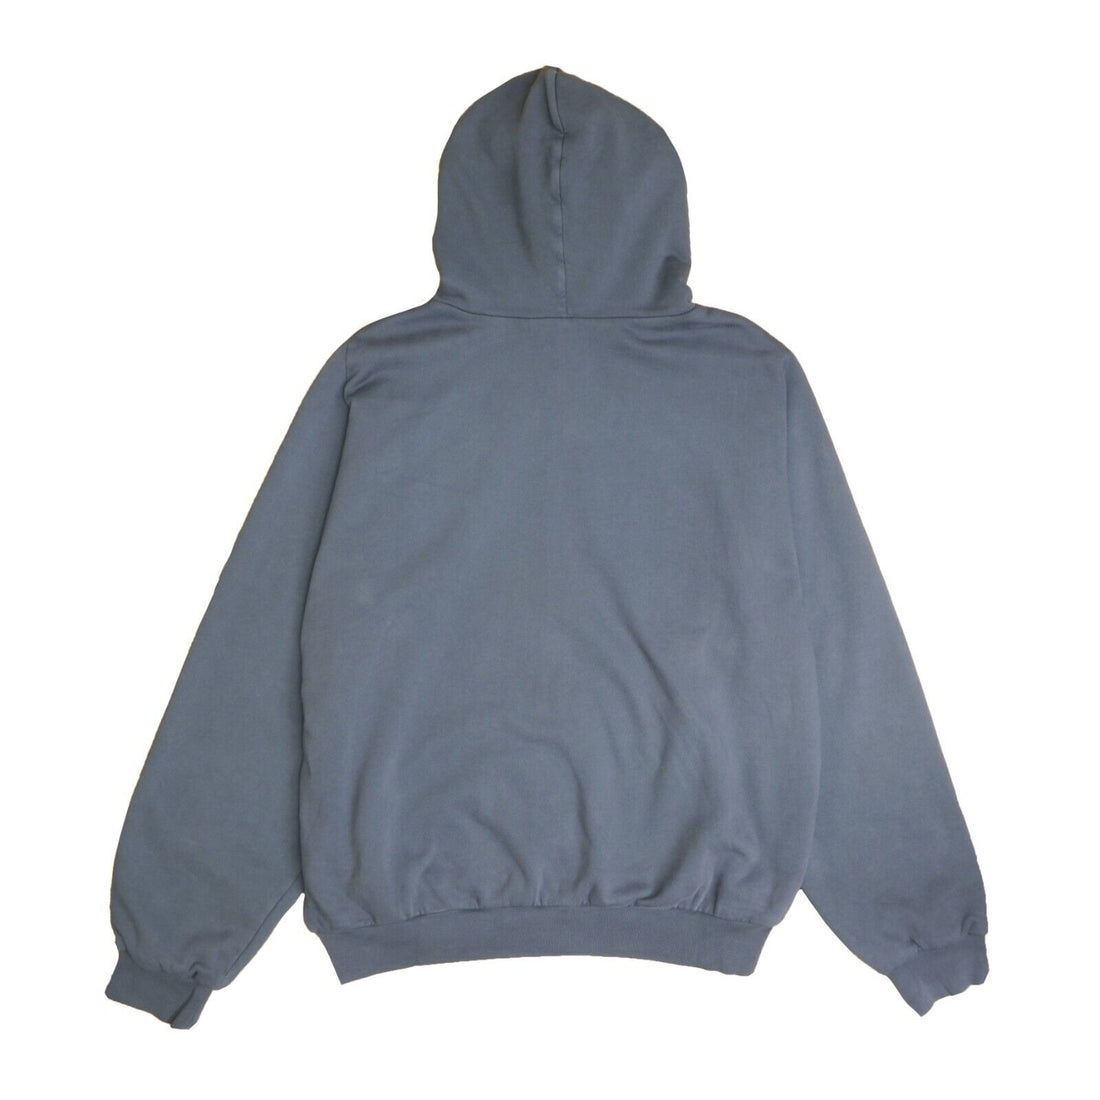 Yeezy Gap Unreleased Zip Sweatshirt Hoodie Size XL Dark Gray